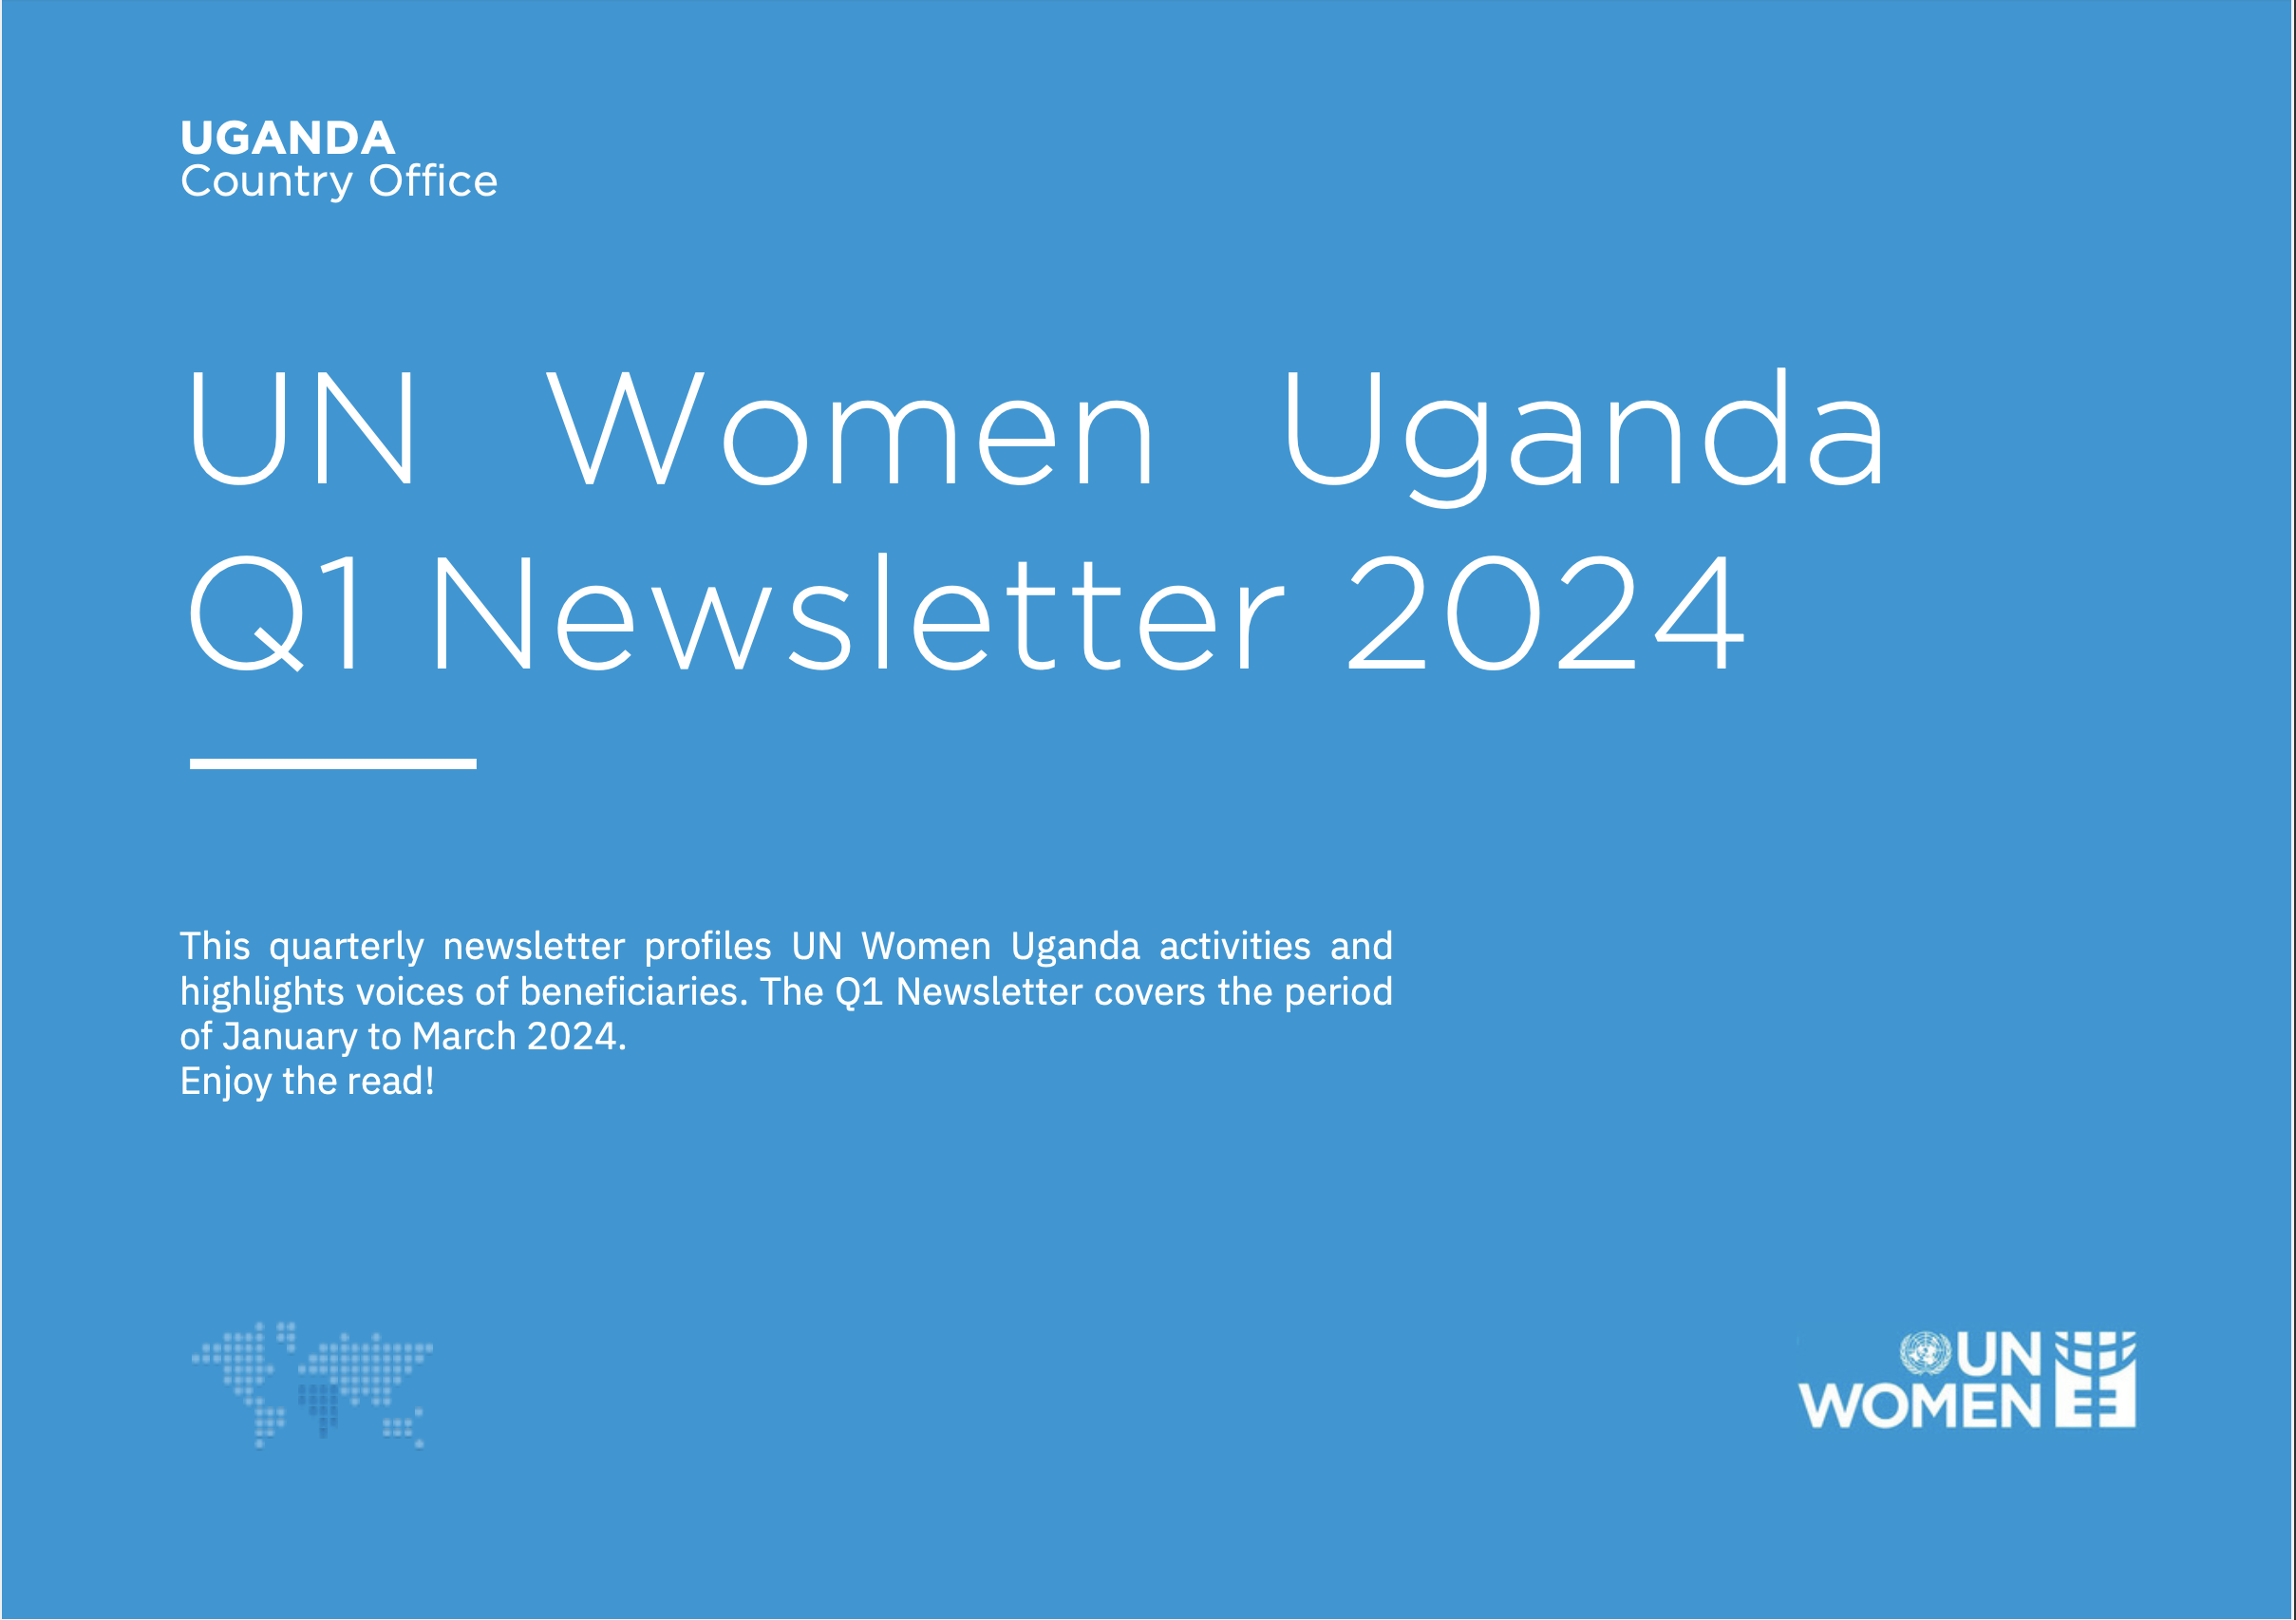 Cover for Uganda's Q1 Newsletter 2024